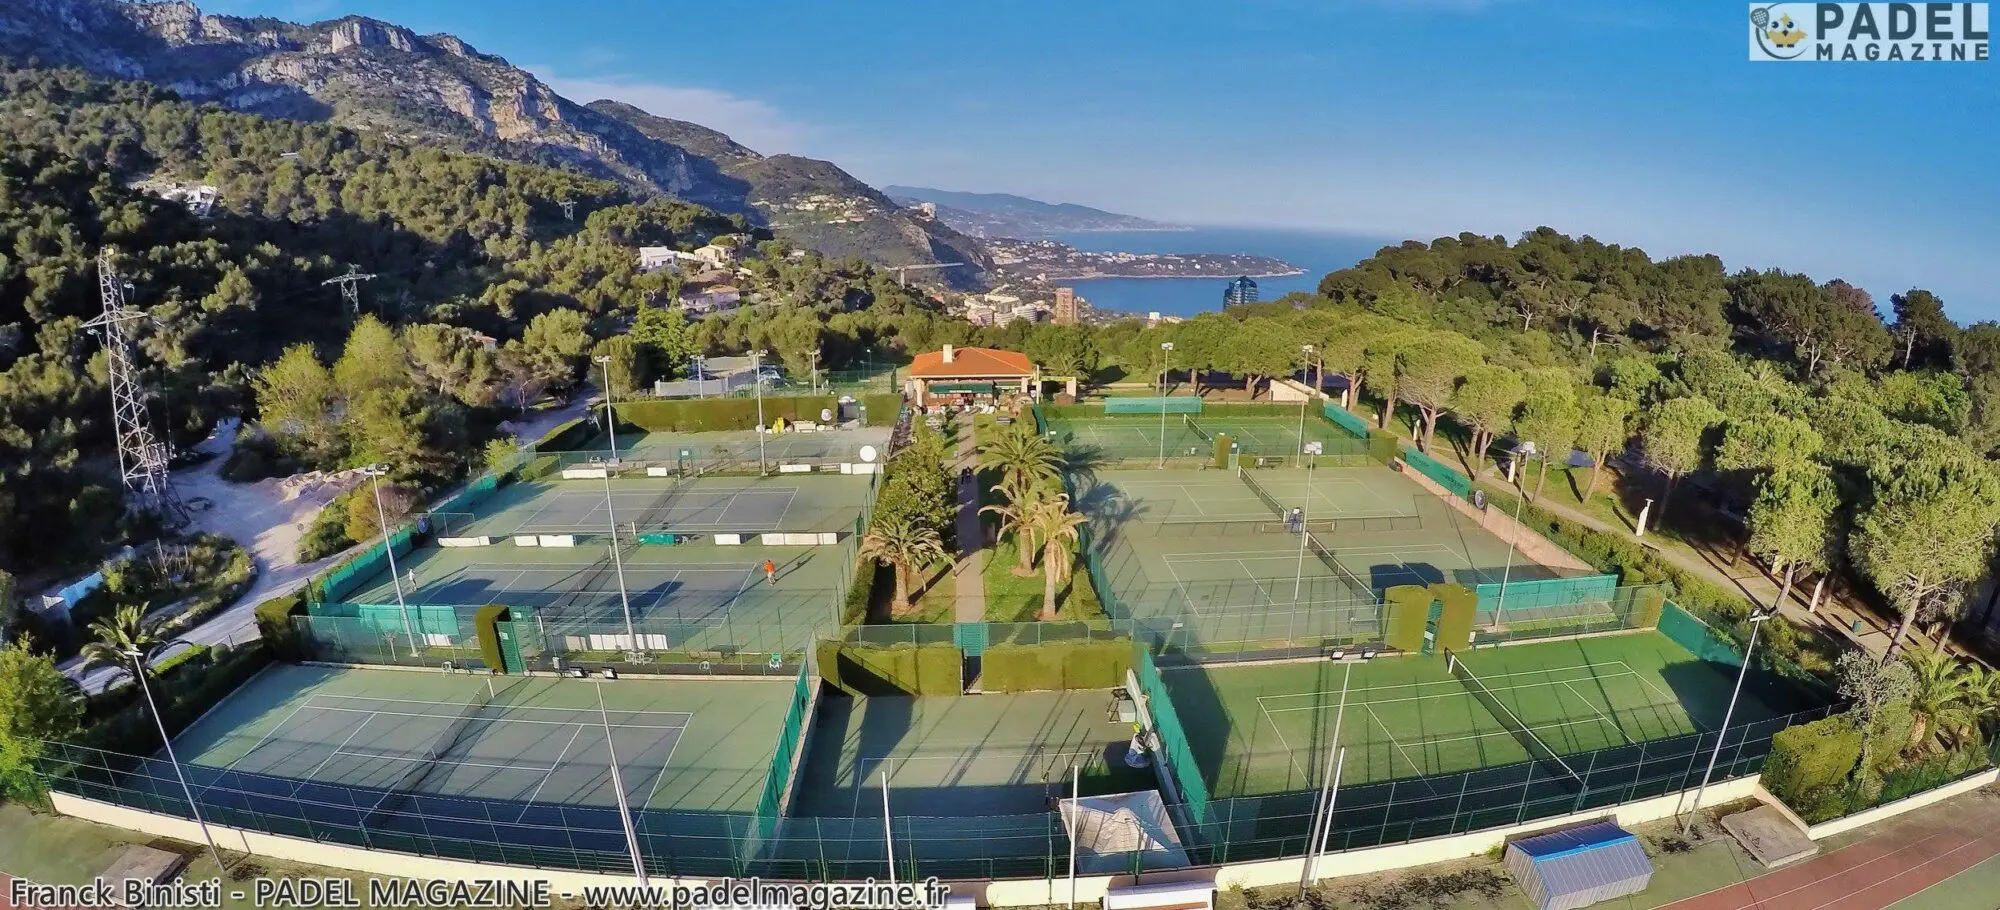 テニス-padel-ソレイユ-モナコ